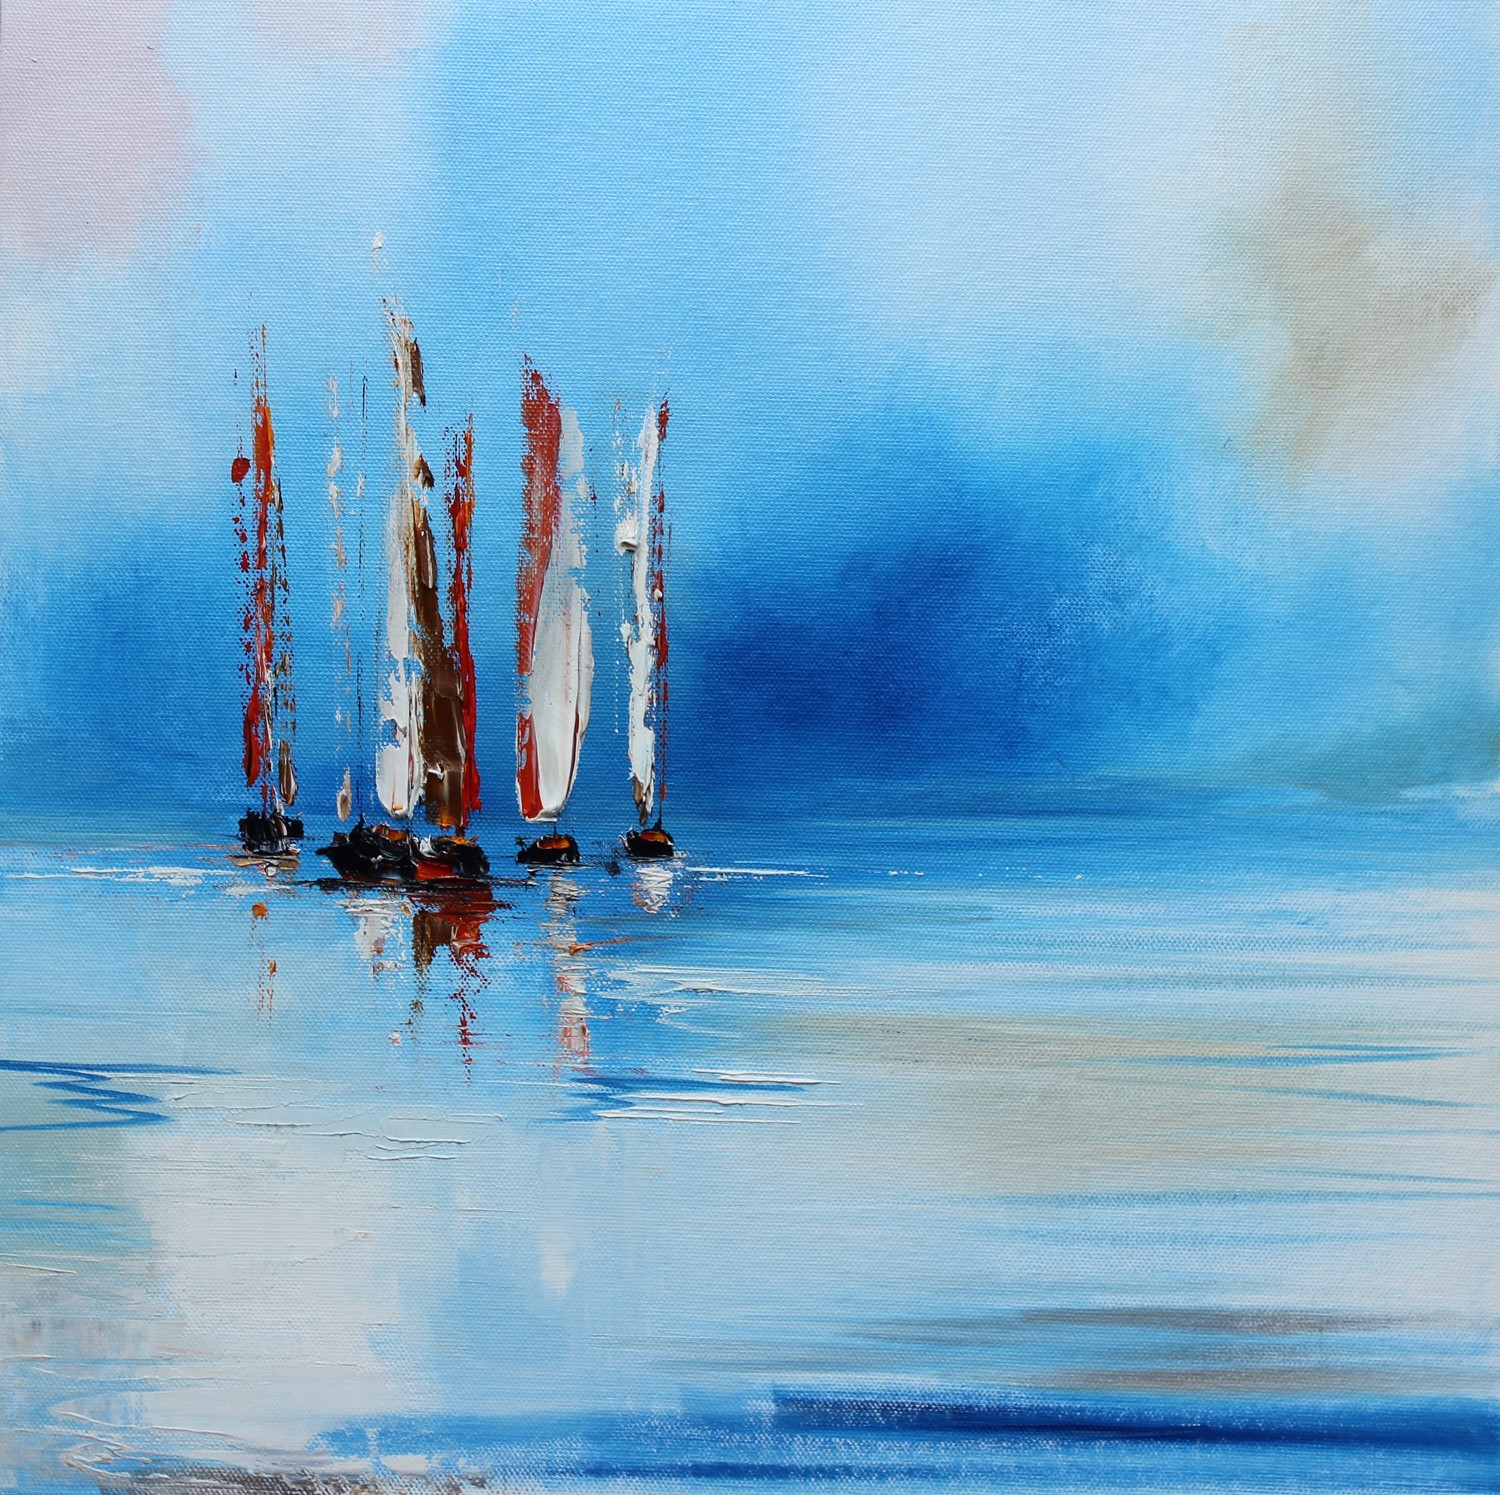 'Setting Sail' by artist Rosanne Barr